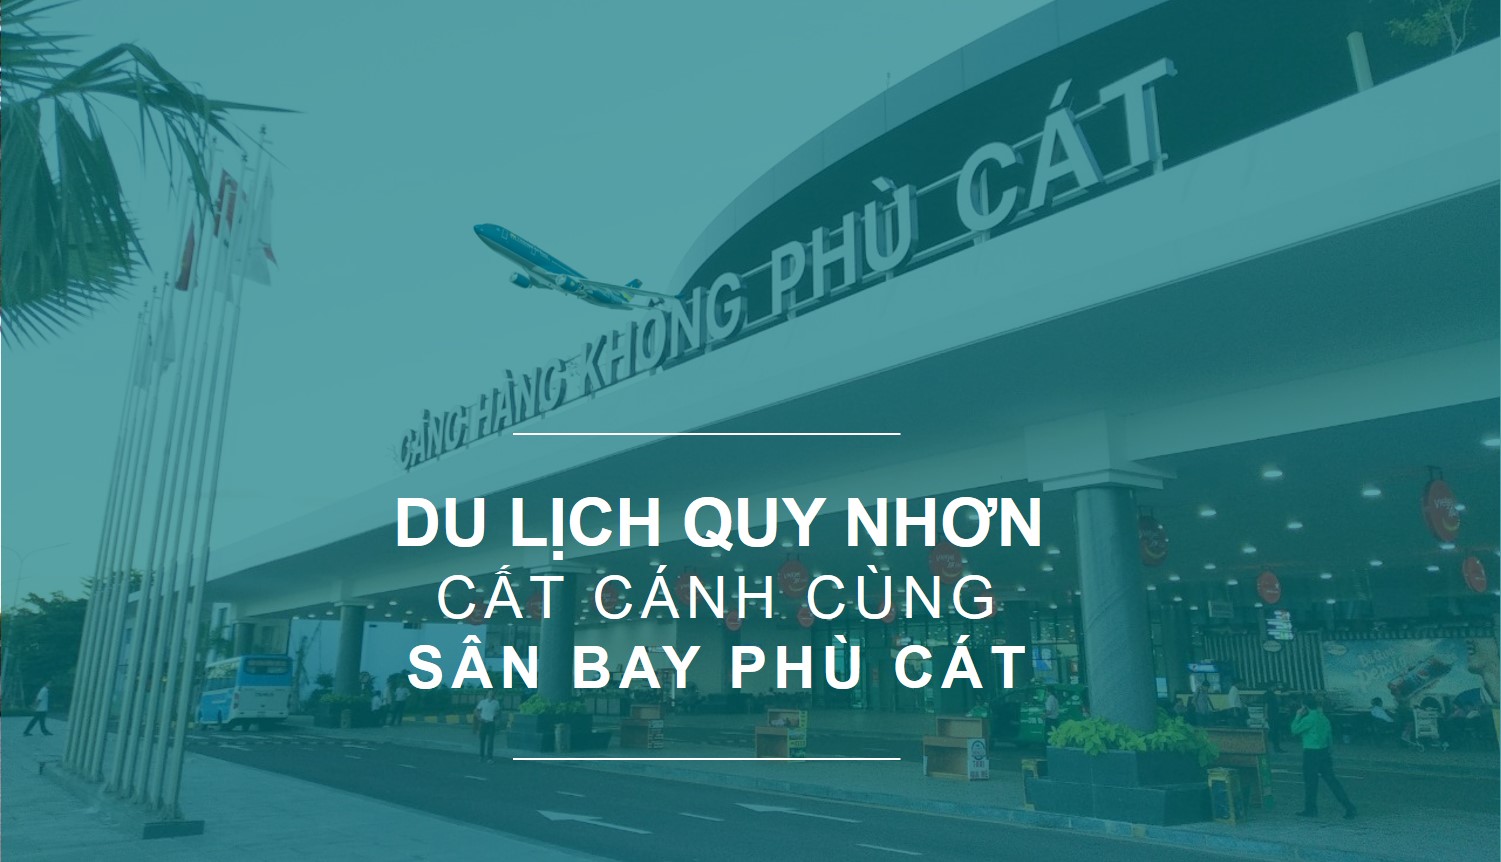 Du lịch Quy Nhơn cất cánh cùng sân bay Phù Cát